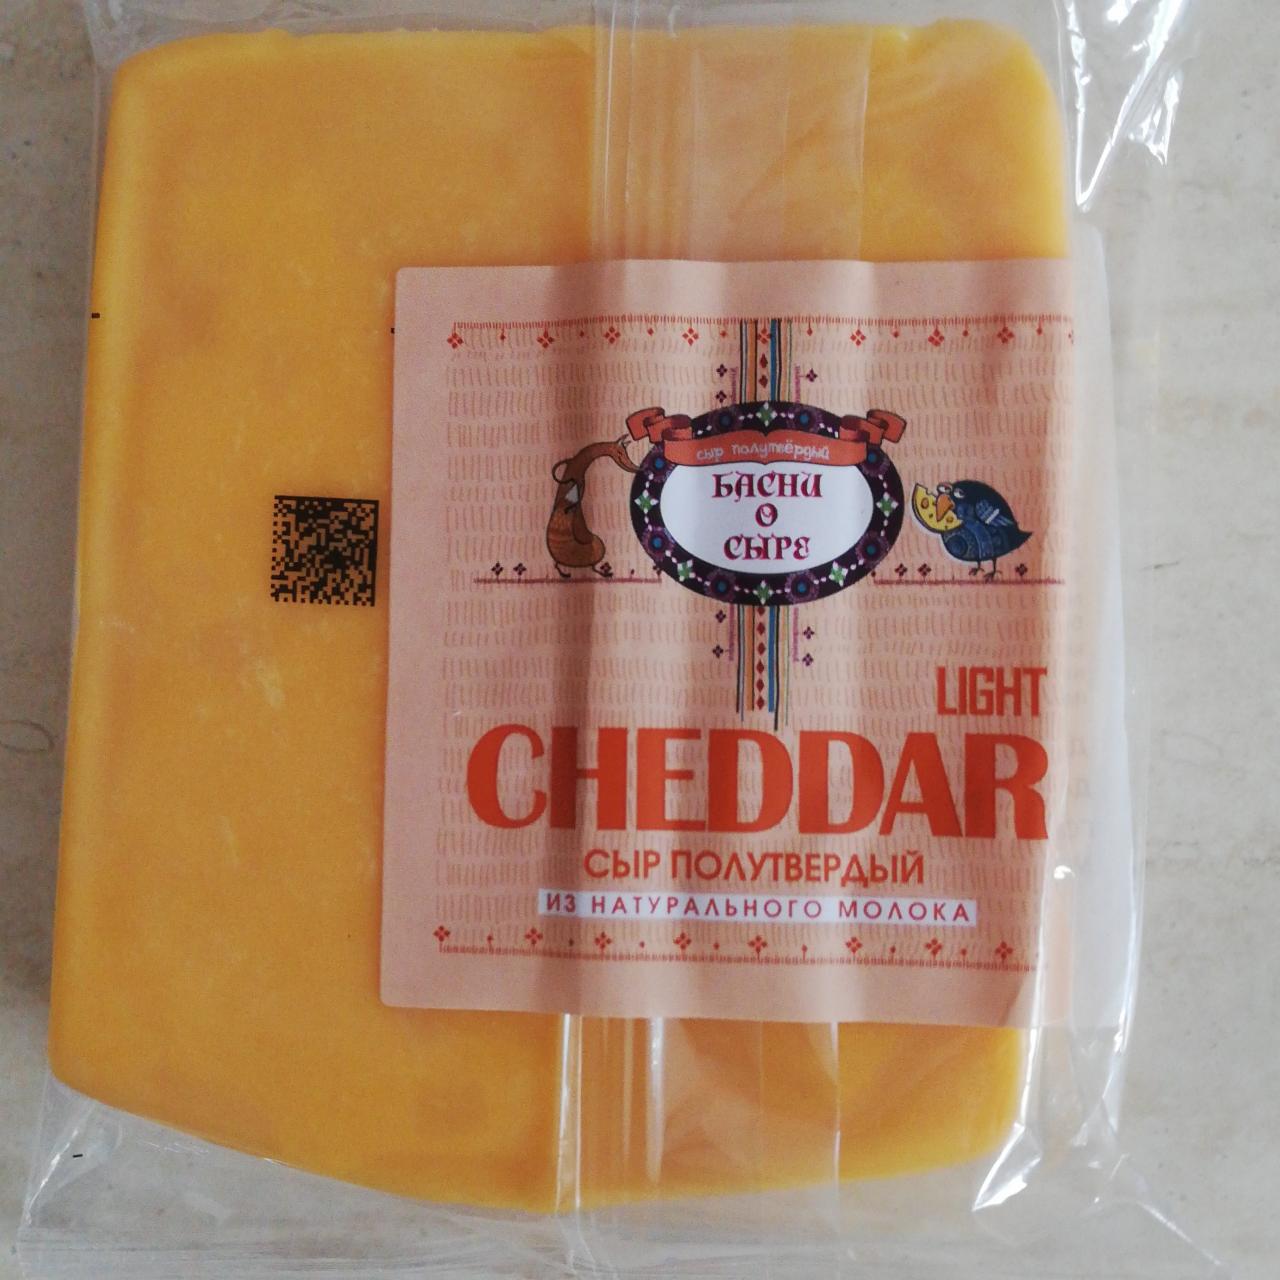 Фото - Сыр полутвердый cheddar Light Басни о сыре